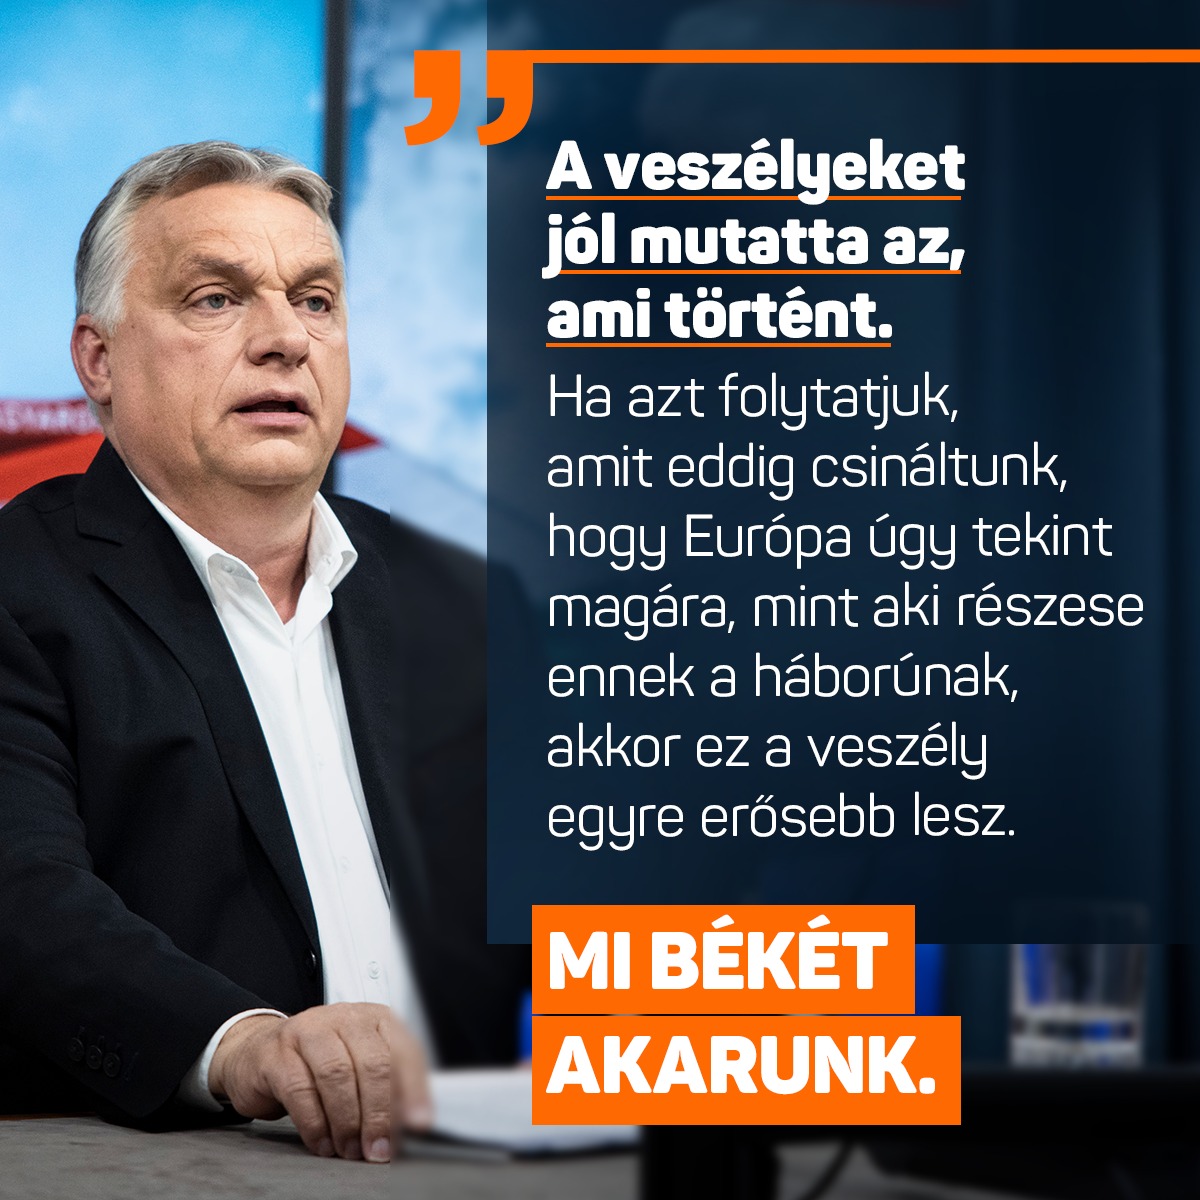 Orbán Viktor a lengyelországi rakétabecsapódásról: Két lengyel ember halt meg, akinek semmi közük nem volt ehhez a háborúhoz, illetve szétlőtték azt az ipari létesítményt is, amelynek a segítségével olajat tudunk Oroszországból Ukrajnán keresztül Magyarországra hozni. Vagyis nem csak a fizikai épségünk van veszélyben, hanem a gazdaságunk biztonsága is hiányzik. Tehát a sérülékenységet, a veszélyeket jól mutatta az, ami történt. Tűzszünet, béketárgyalás kell.